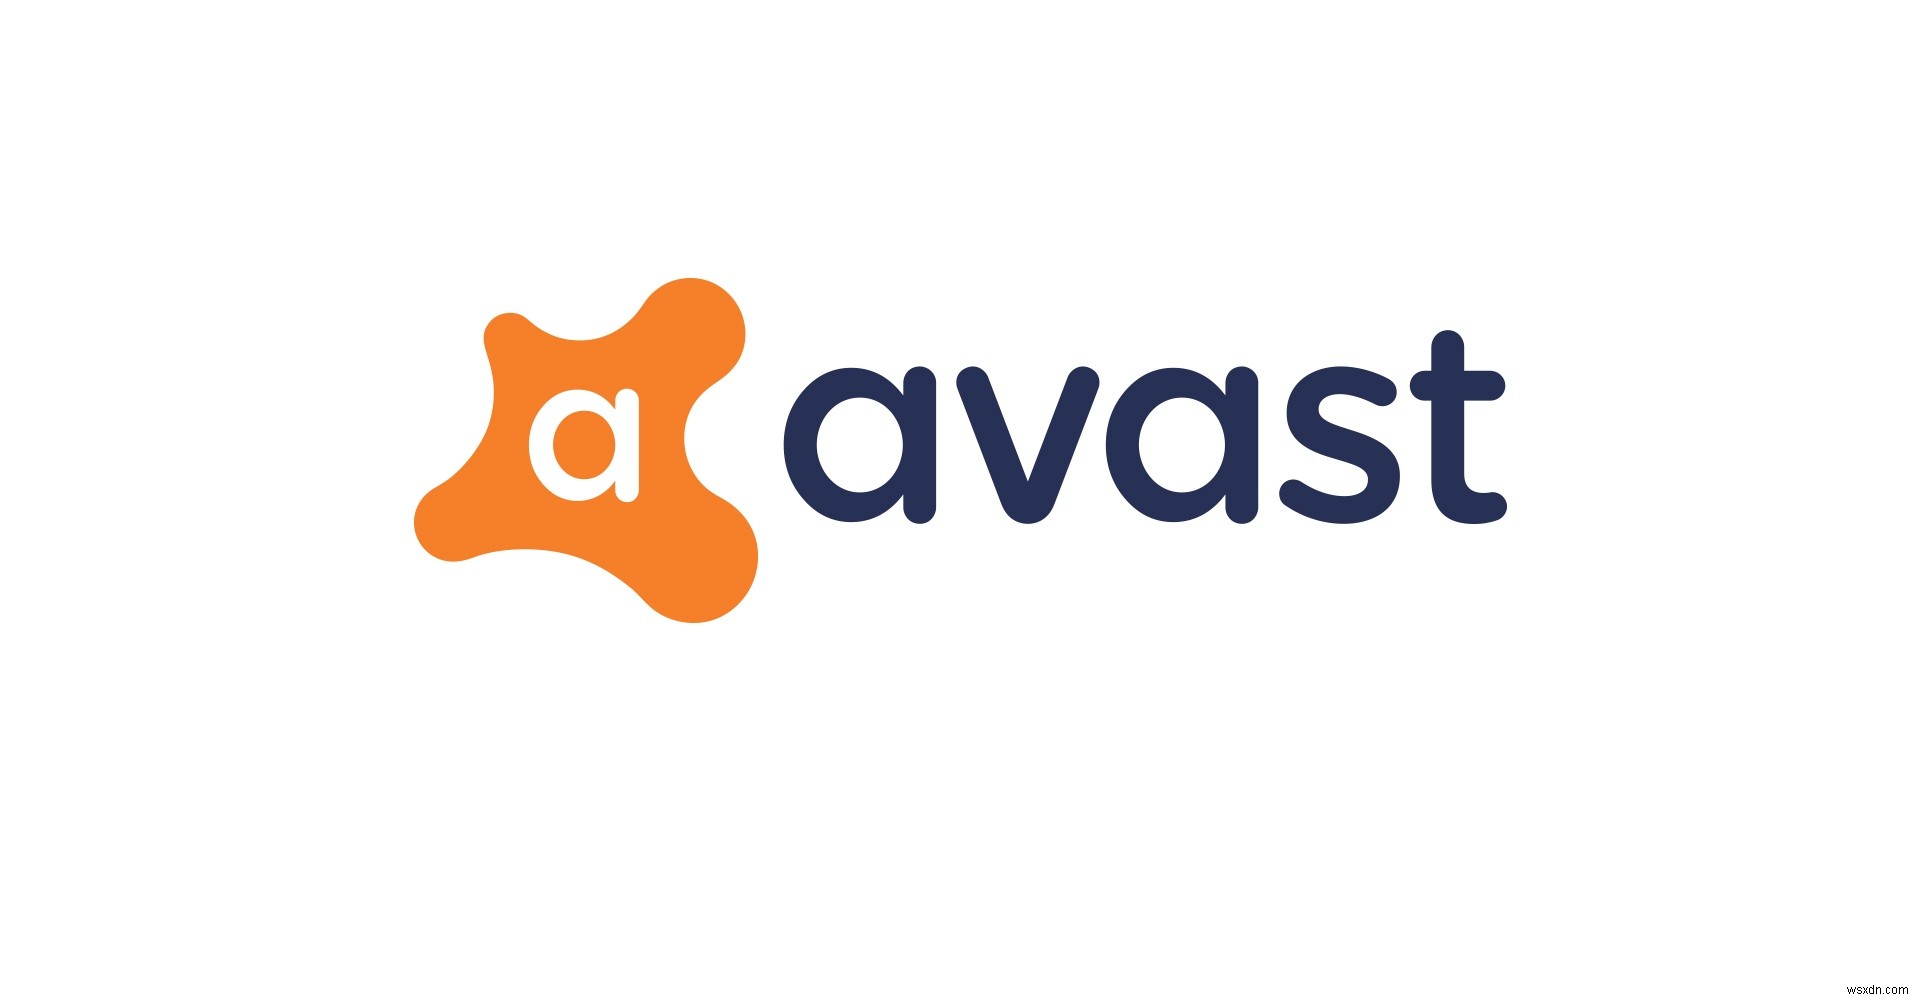 จะเพิ่มข้อยกเว้นให้กับ Avast ได้อย่างไร 